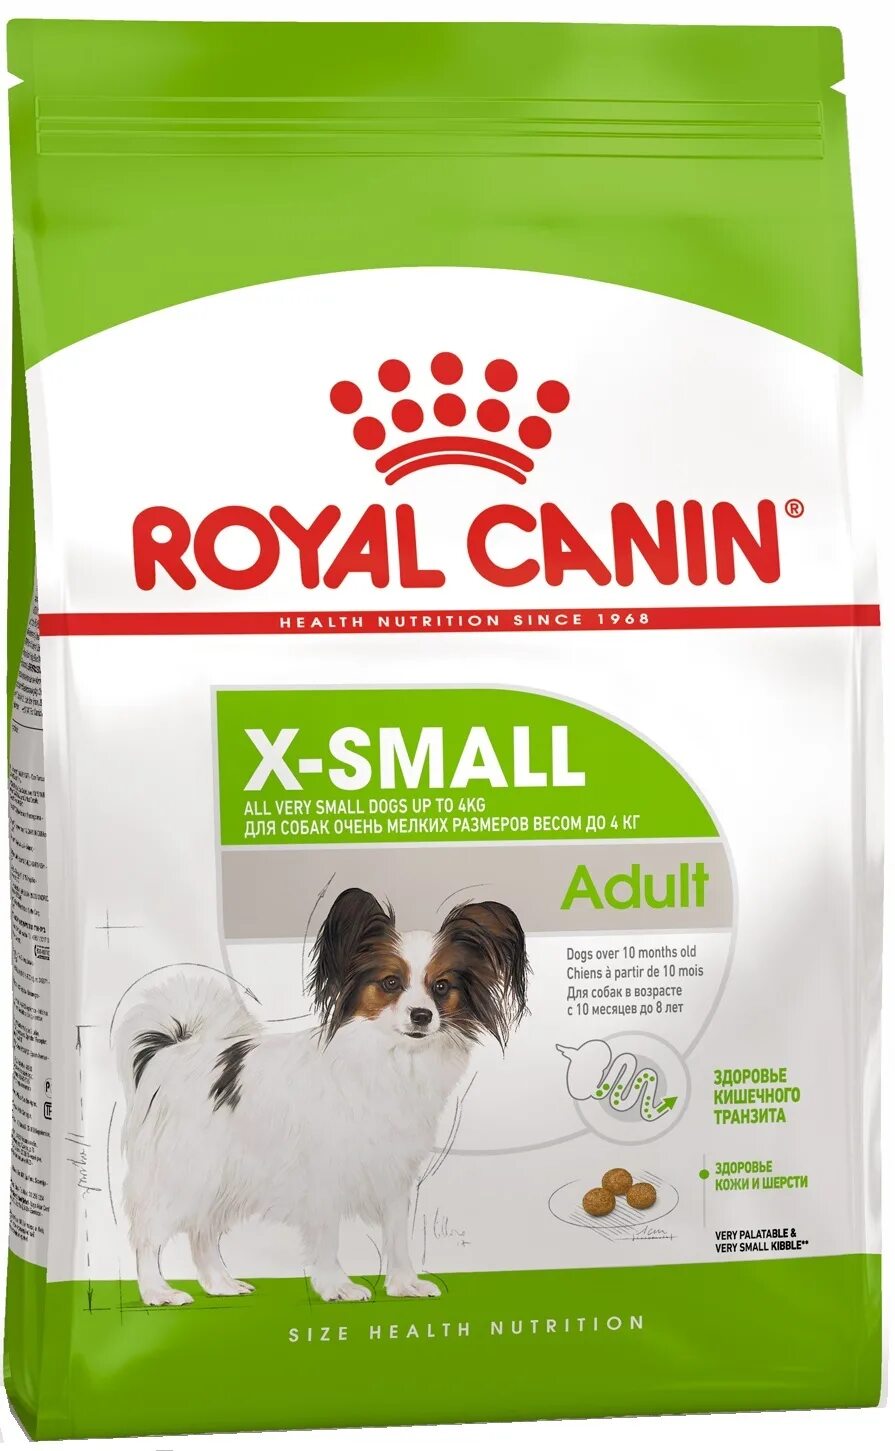 Роял Канин x small для собак. Royal Canin для собак XSMALL Adult 8+. Royal Canin (Роял Канин) x-small Adult 8+. Роял Канин для щенков x small 10. Сухой корм для карликовая собака